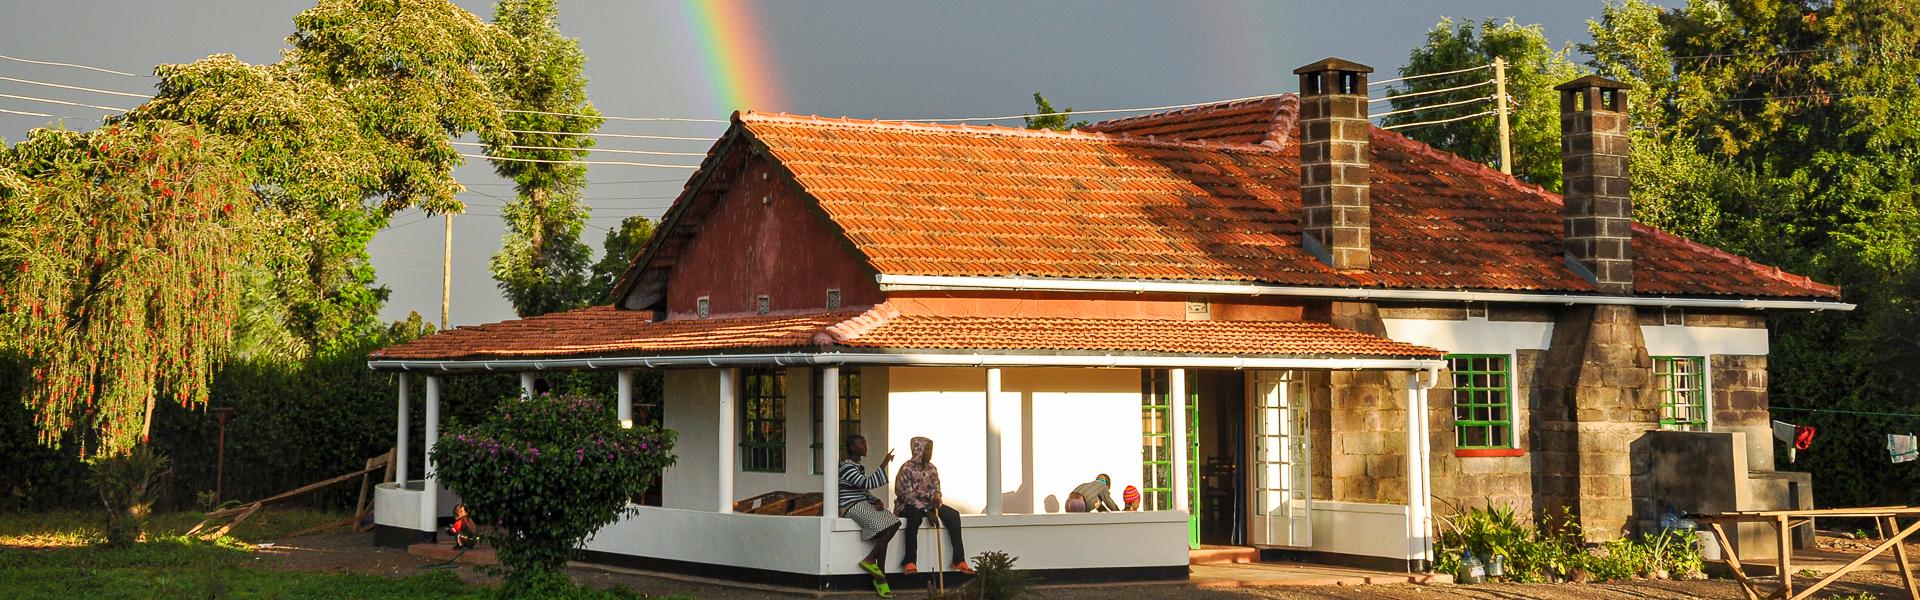 Malaika Haus mit Regenbogen |  Malaika / Chamleon